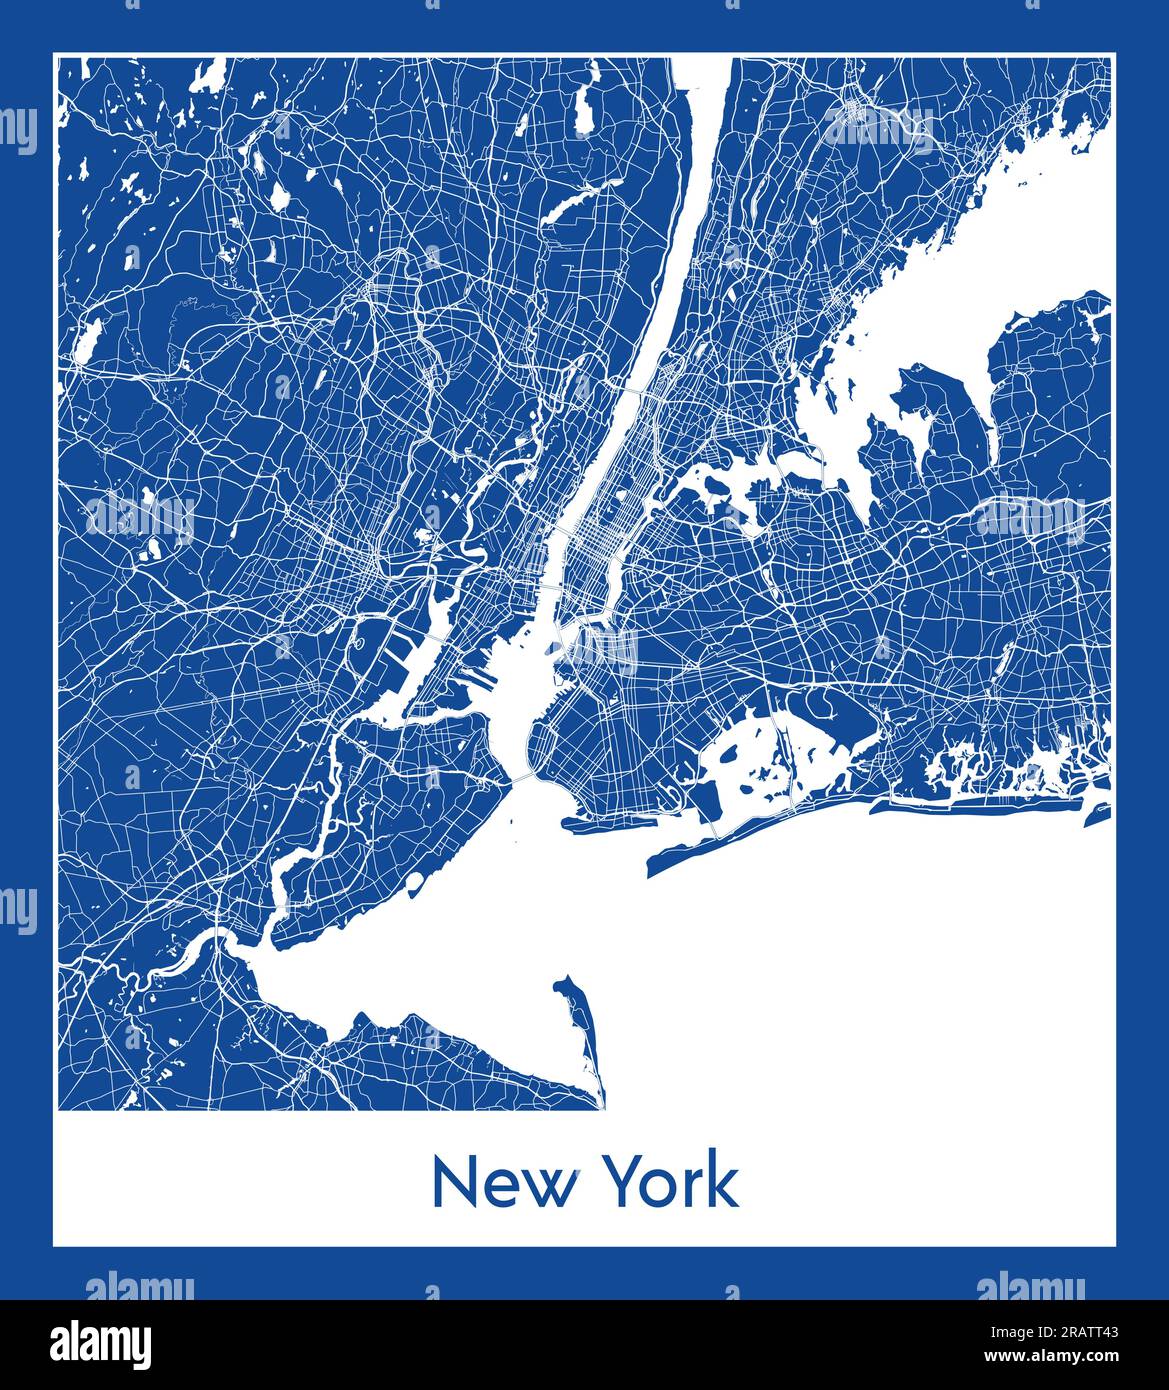 New York États-Unis Amérique du Nord carte de la ville illustration vectorielle d'impression bleue Illustration de Vecteur